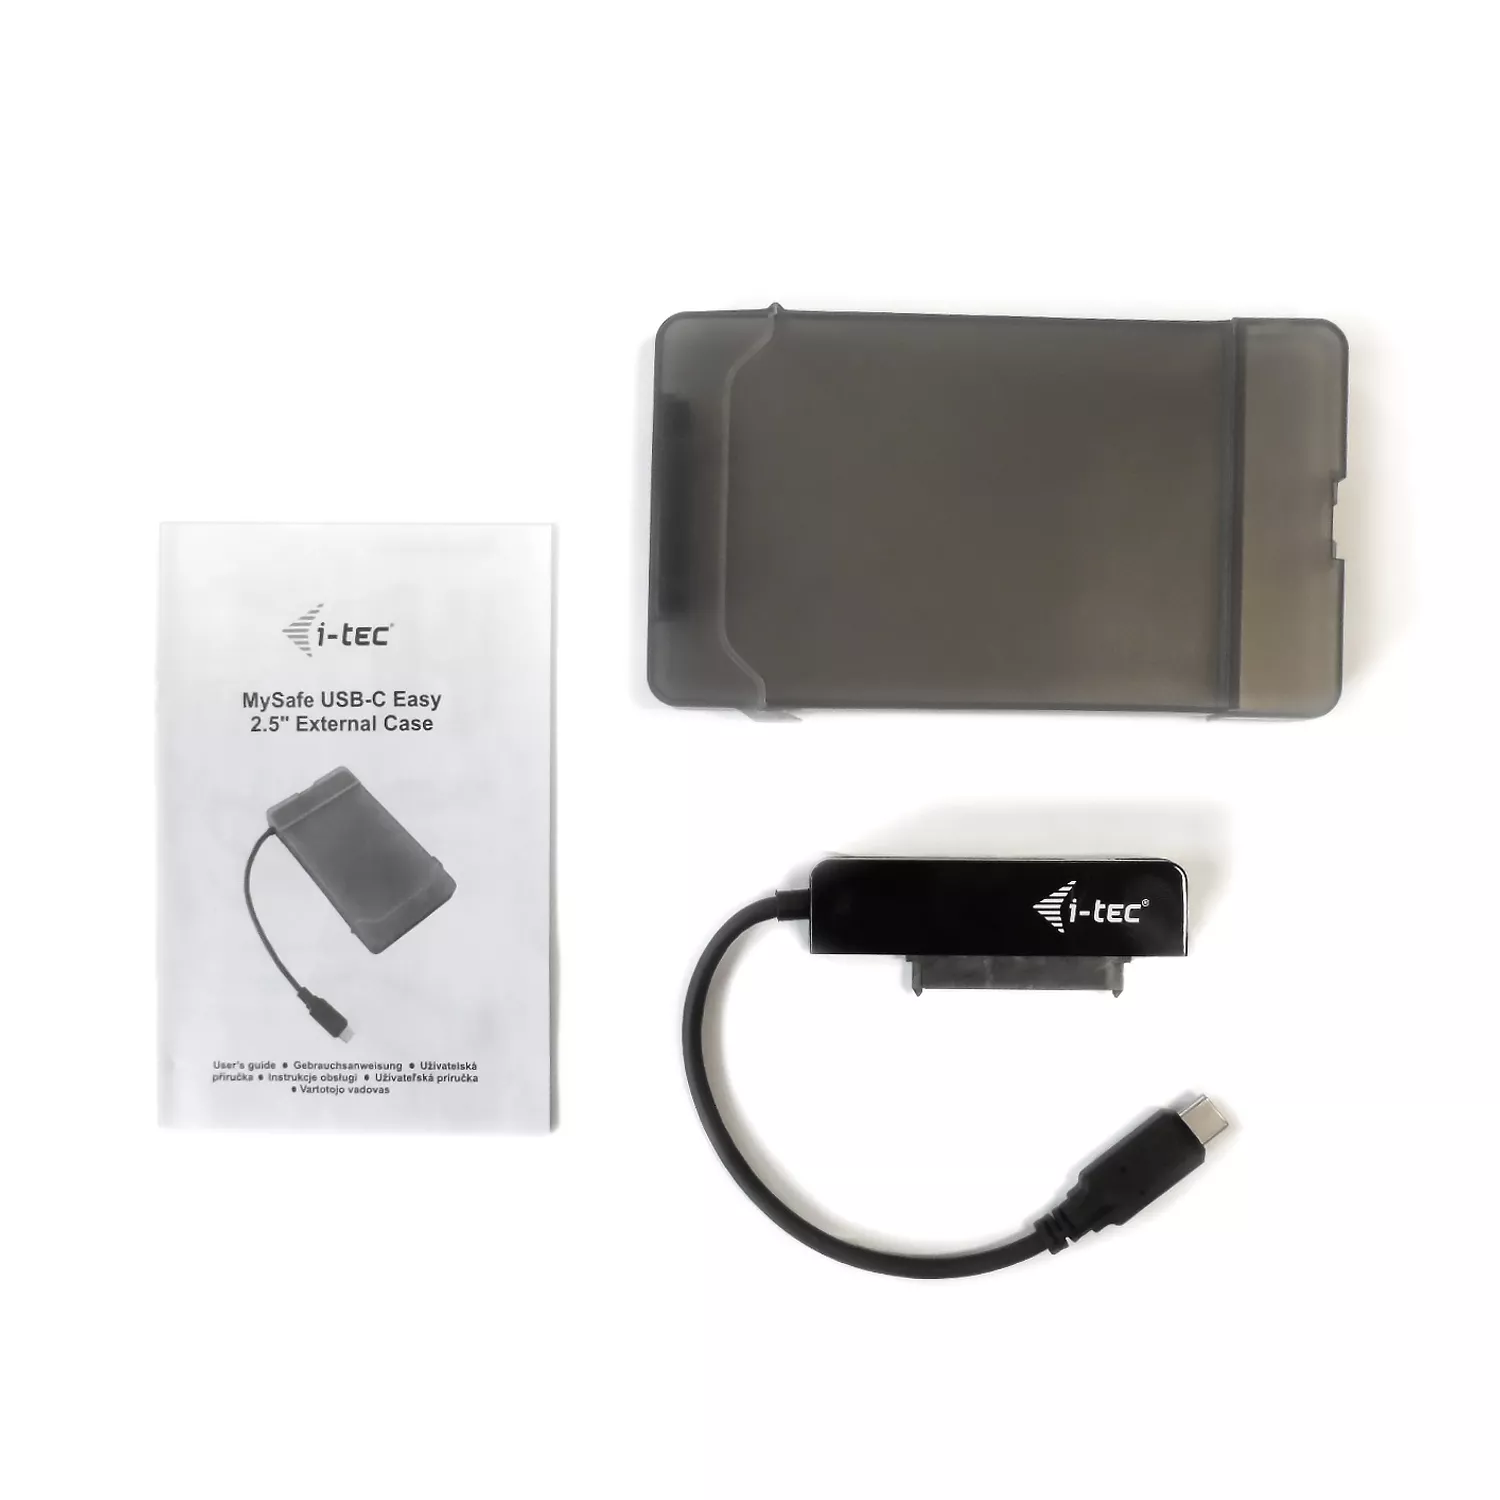 Vente I-TEC USB-C Advance My Safe Easy Case 6.4cm i-tec au meilleur prix - visuel 6